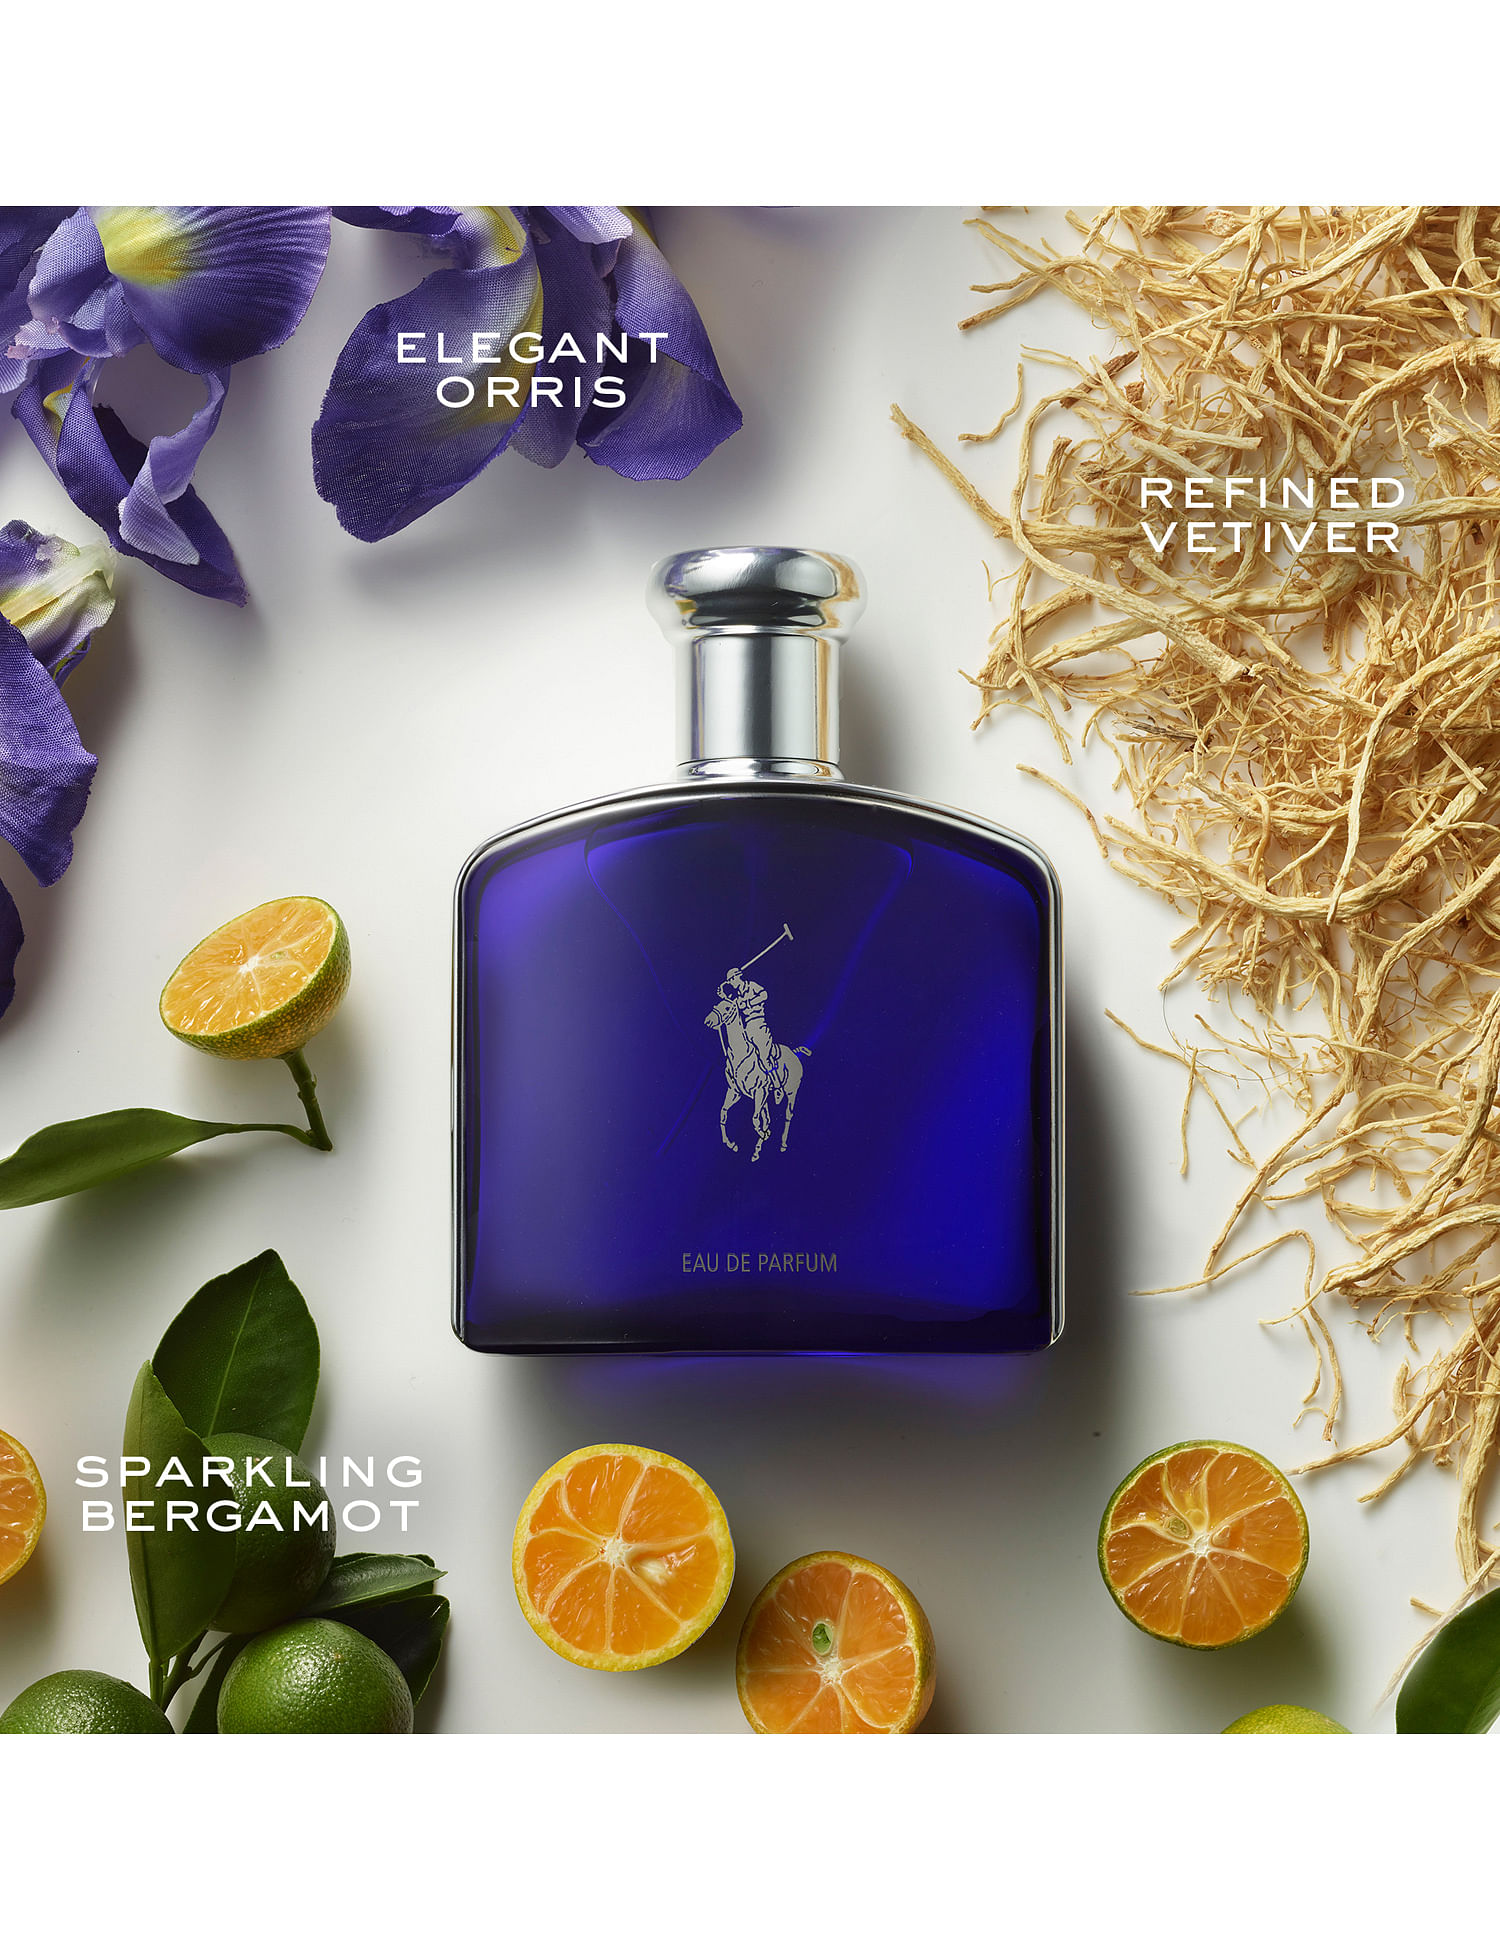 Ralph Lauren - Polo Blue - Eau de Parfum - Men's Cologne - Aquatic & Fresh  - With Citrus, Bergamot, and Vetiver - Medium Intensity